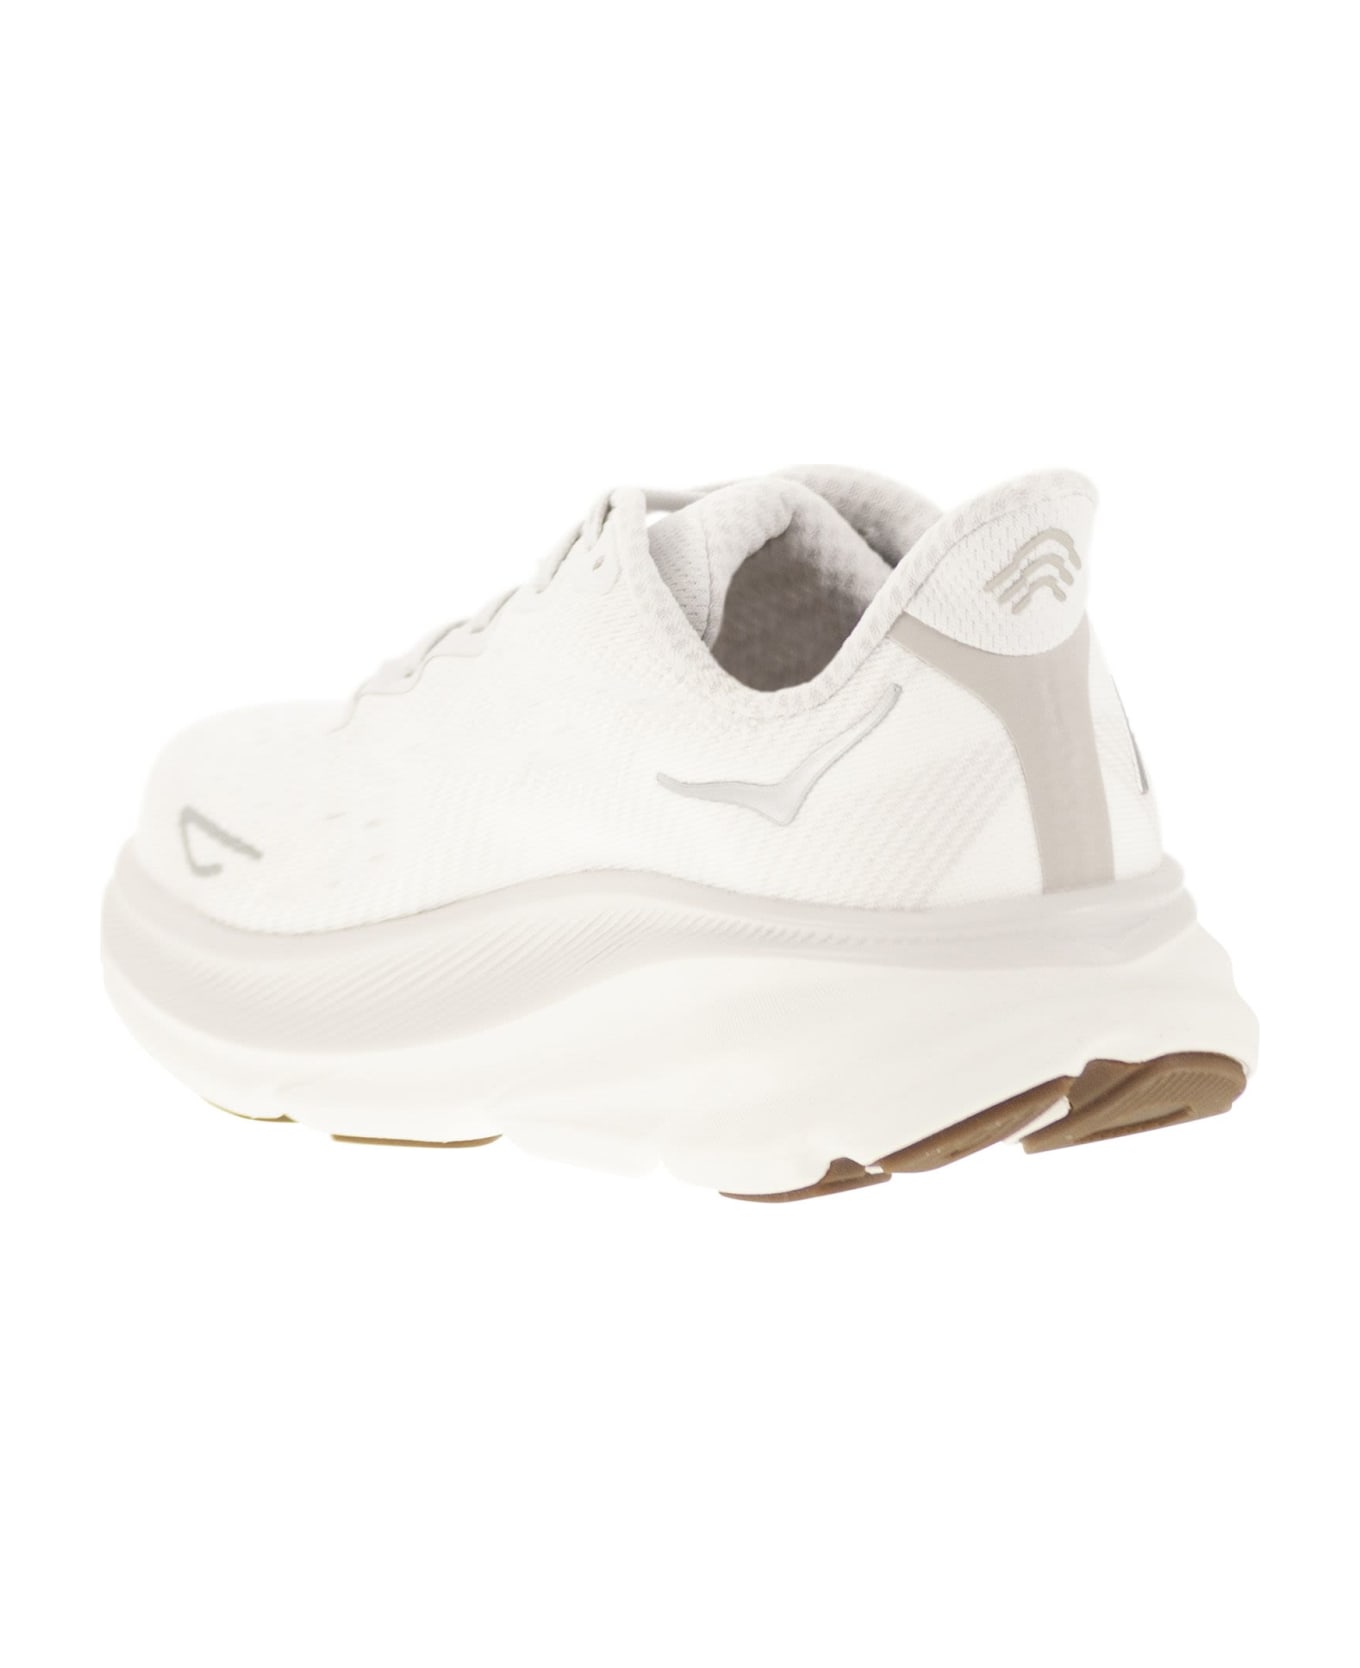 Hoka Clifton 9 - Breathable Sports Shoe - White